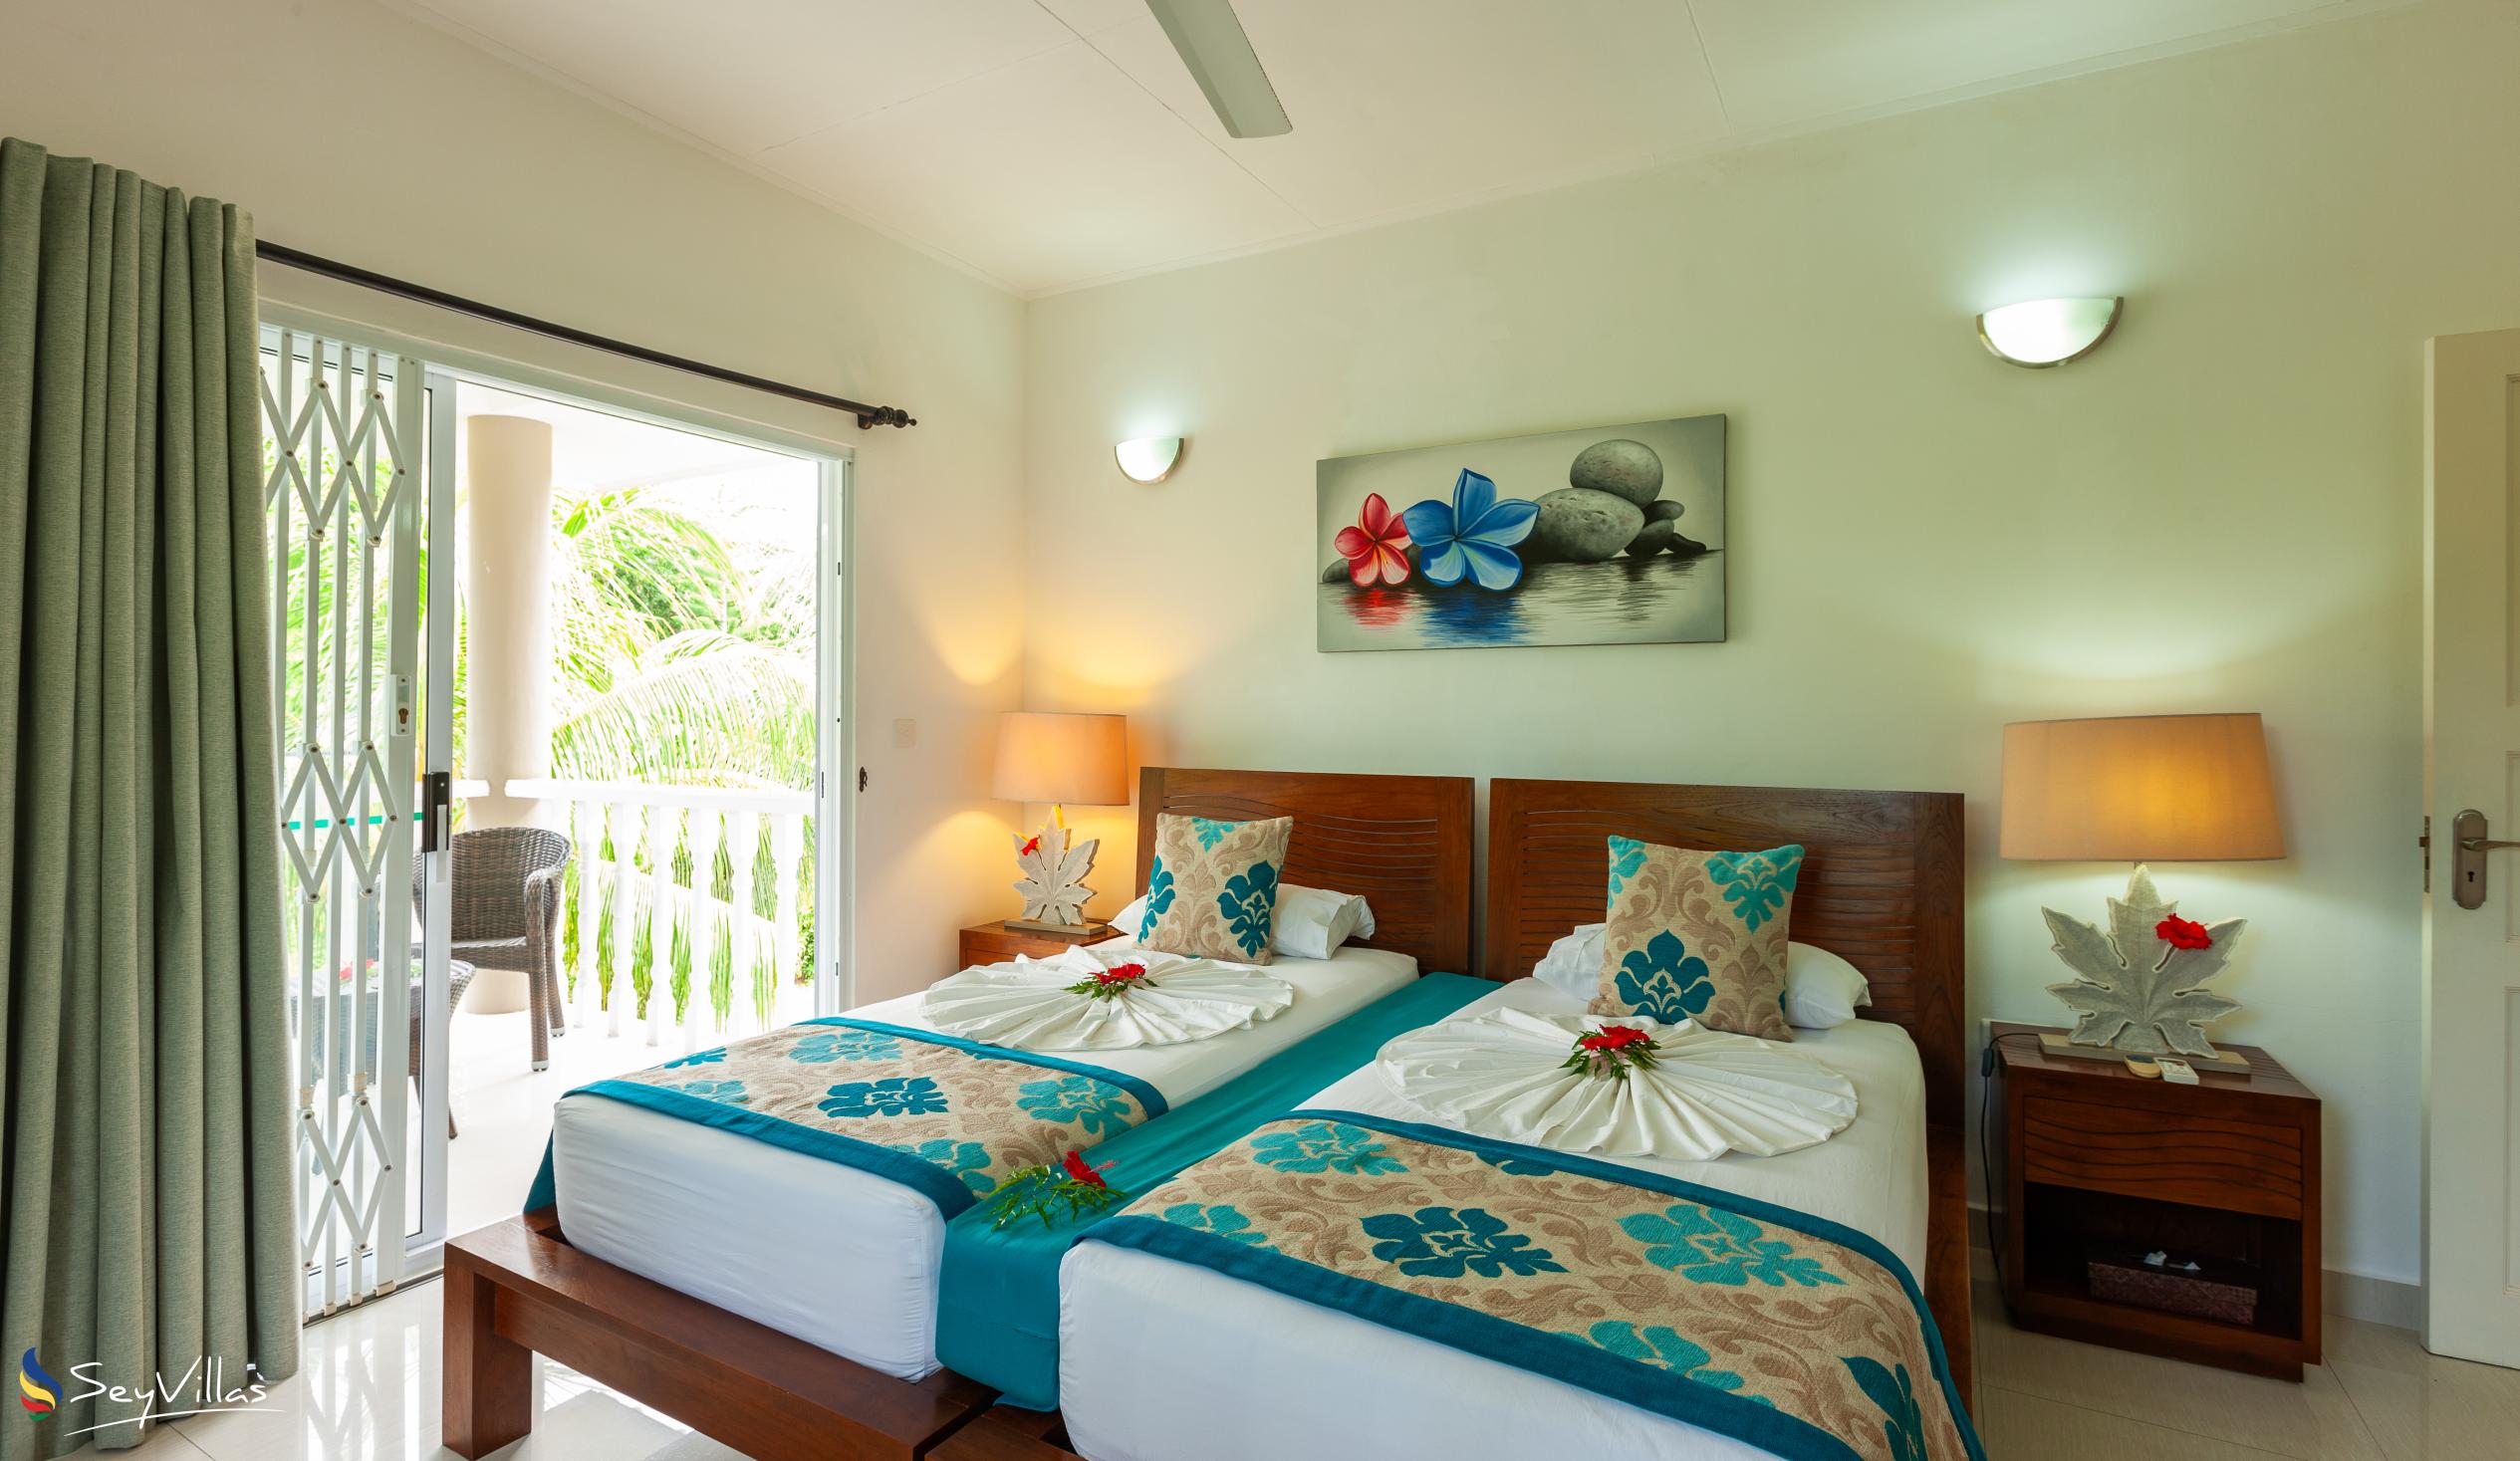 Foto 15: Casa Tara Villas - Appartamento con 2 camere - Praslin (Seychelles)